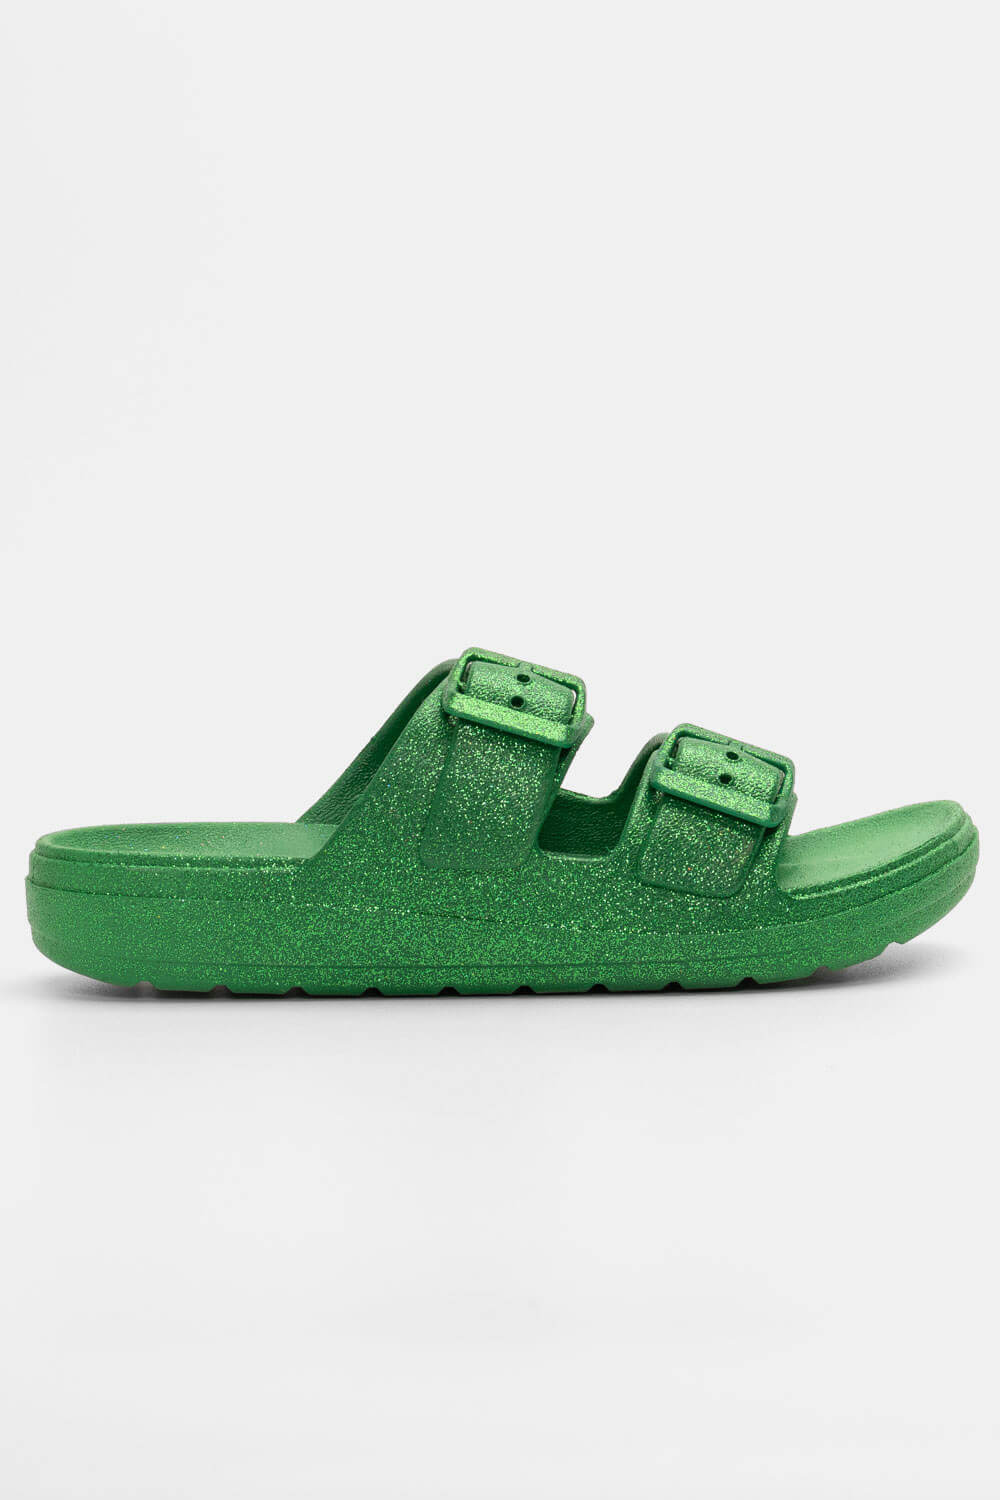 ΠΑΠΟΥΤΣΙΑ > Jelly Shoes Παντόφλες με Δύο Τόκες & Glitter - Πράσινο